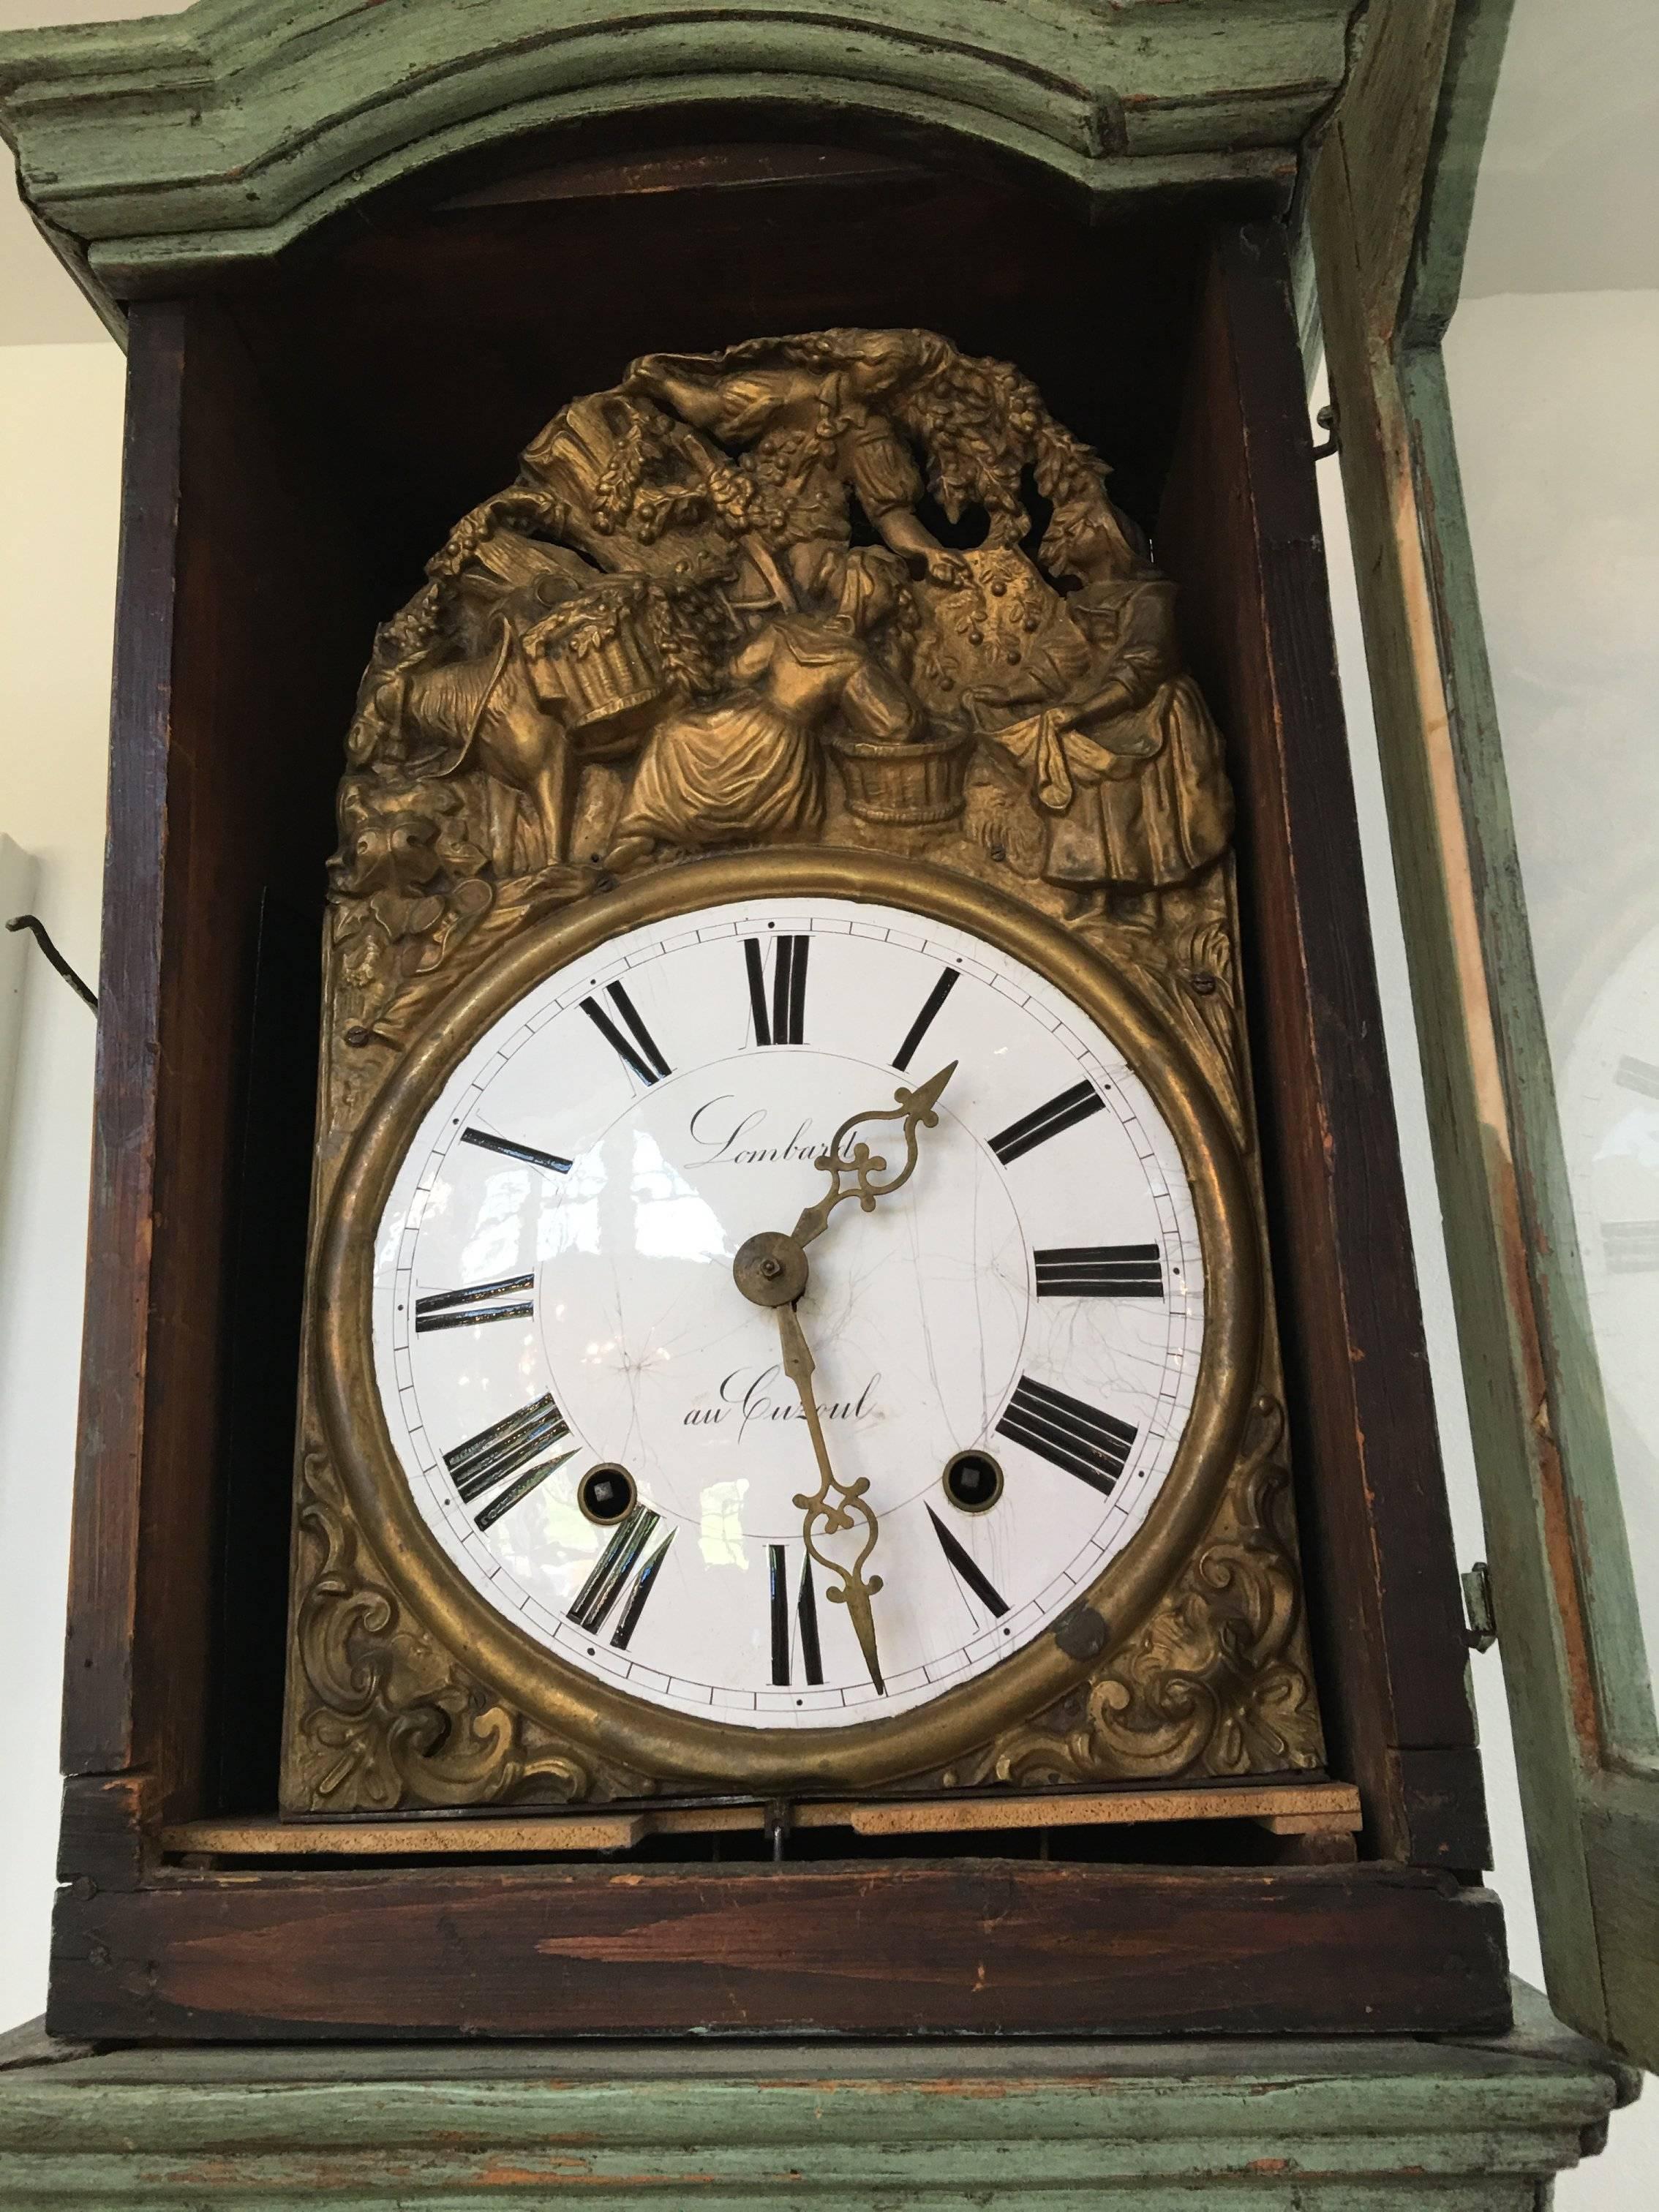 Lombard au Cuzoul Grandfather Clock 4